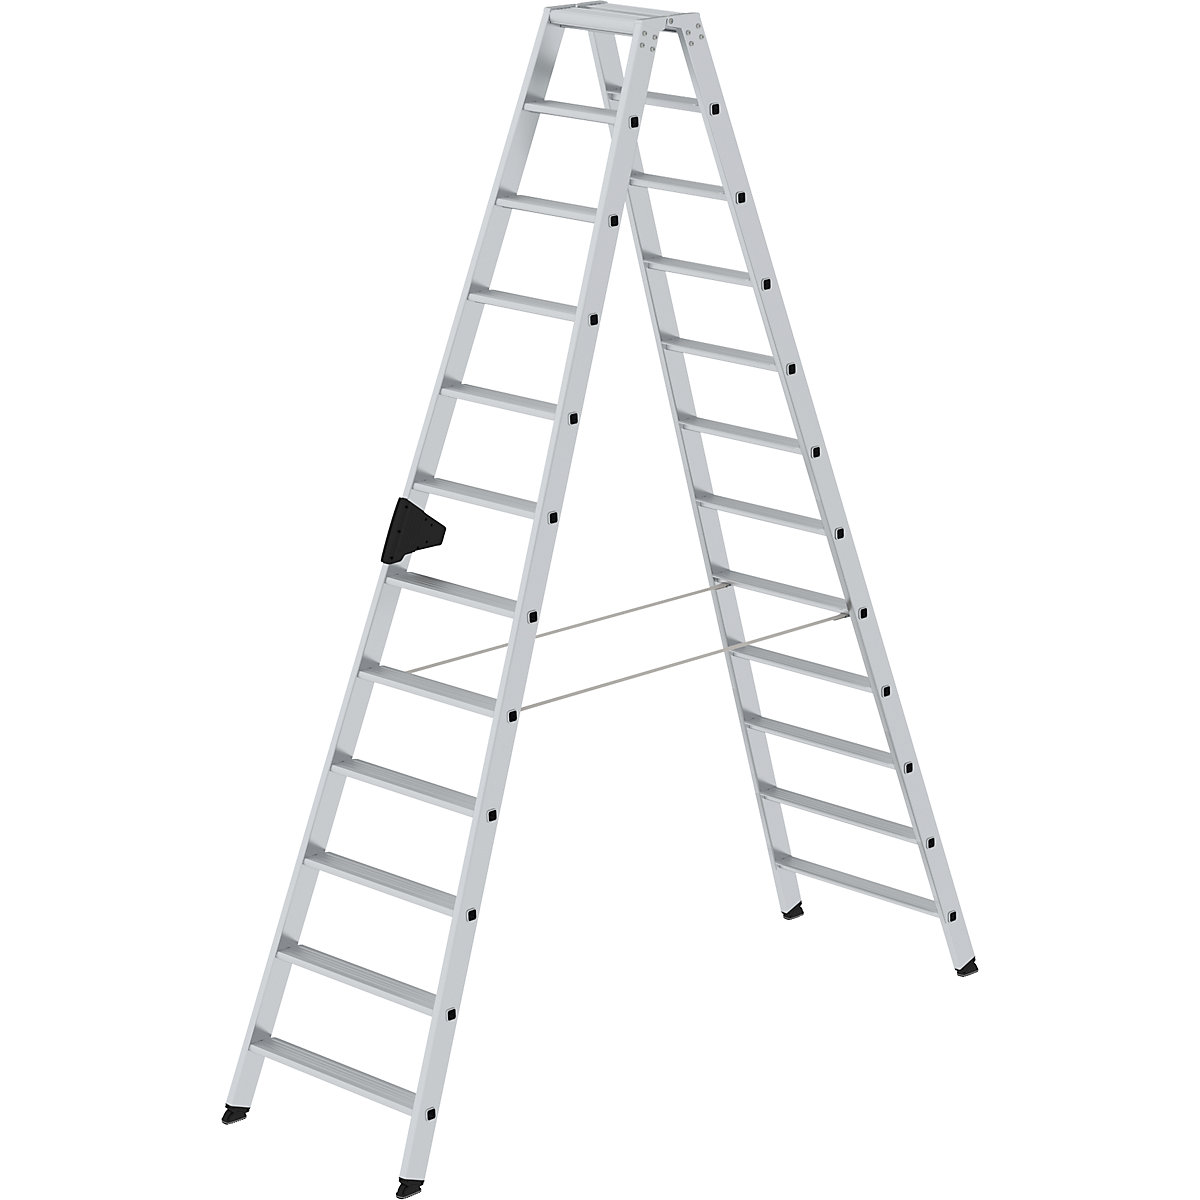 Escalera tipo tijera de peldaños planos, ascenso por ambos lados – MUNK, modelo extra cómodo con ergo-pad®, 2 x 12 peldaños-13